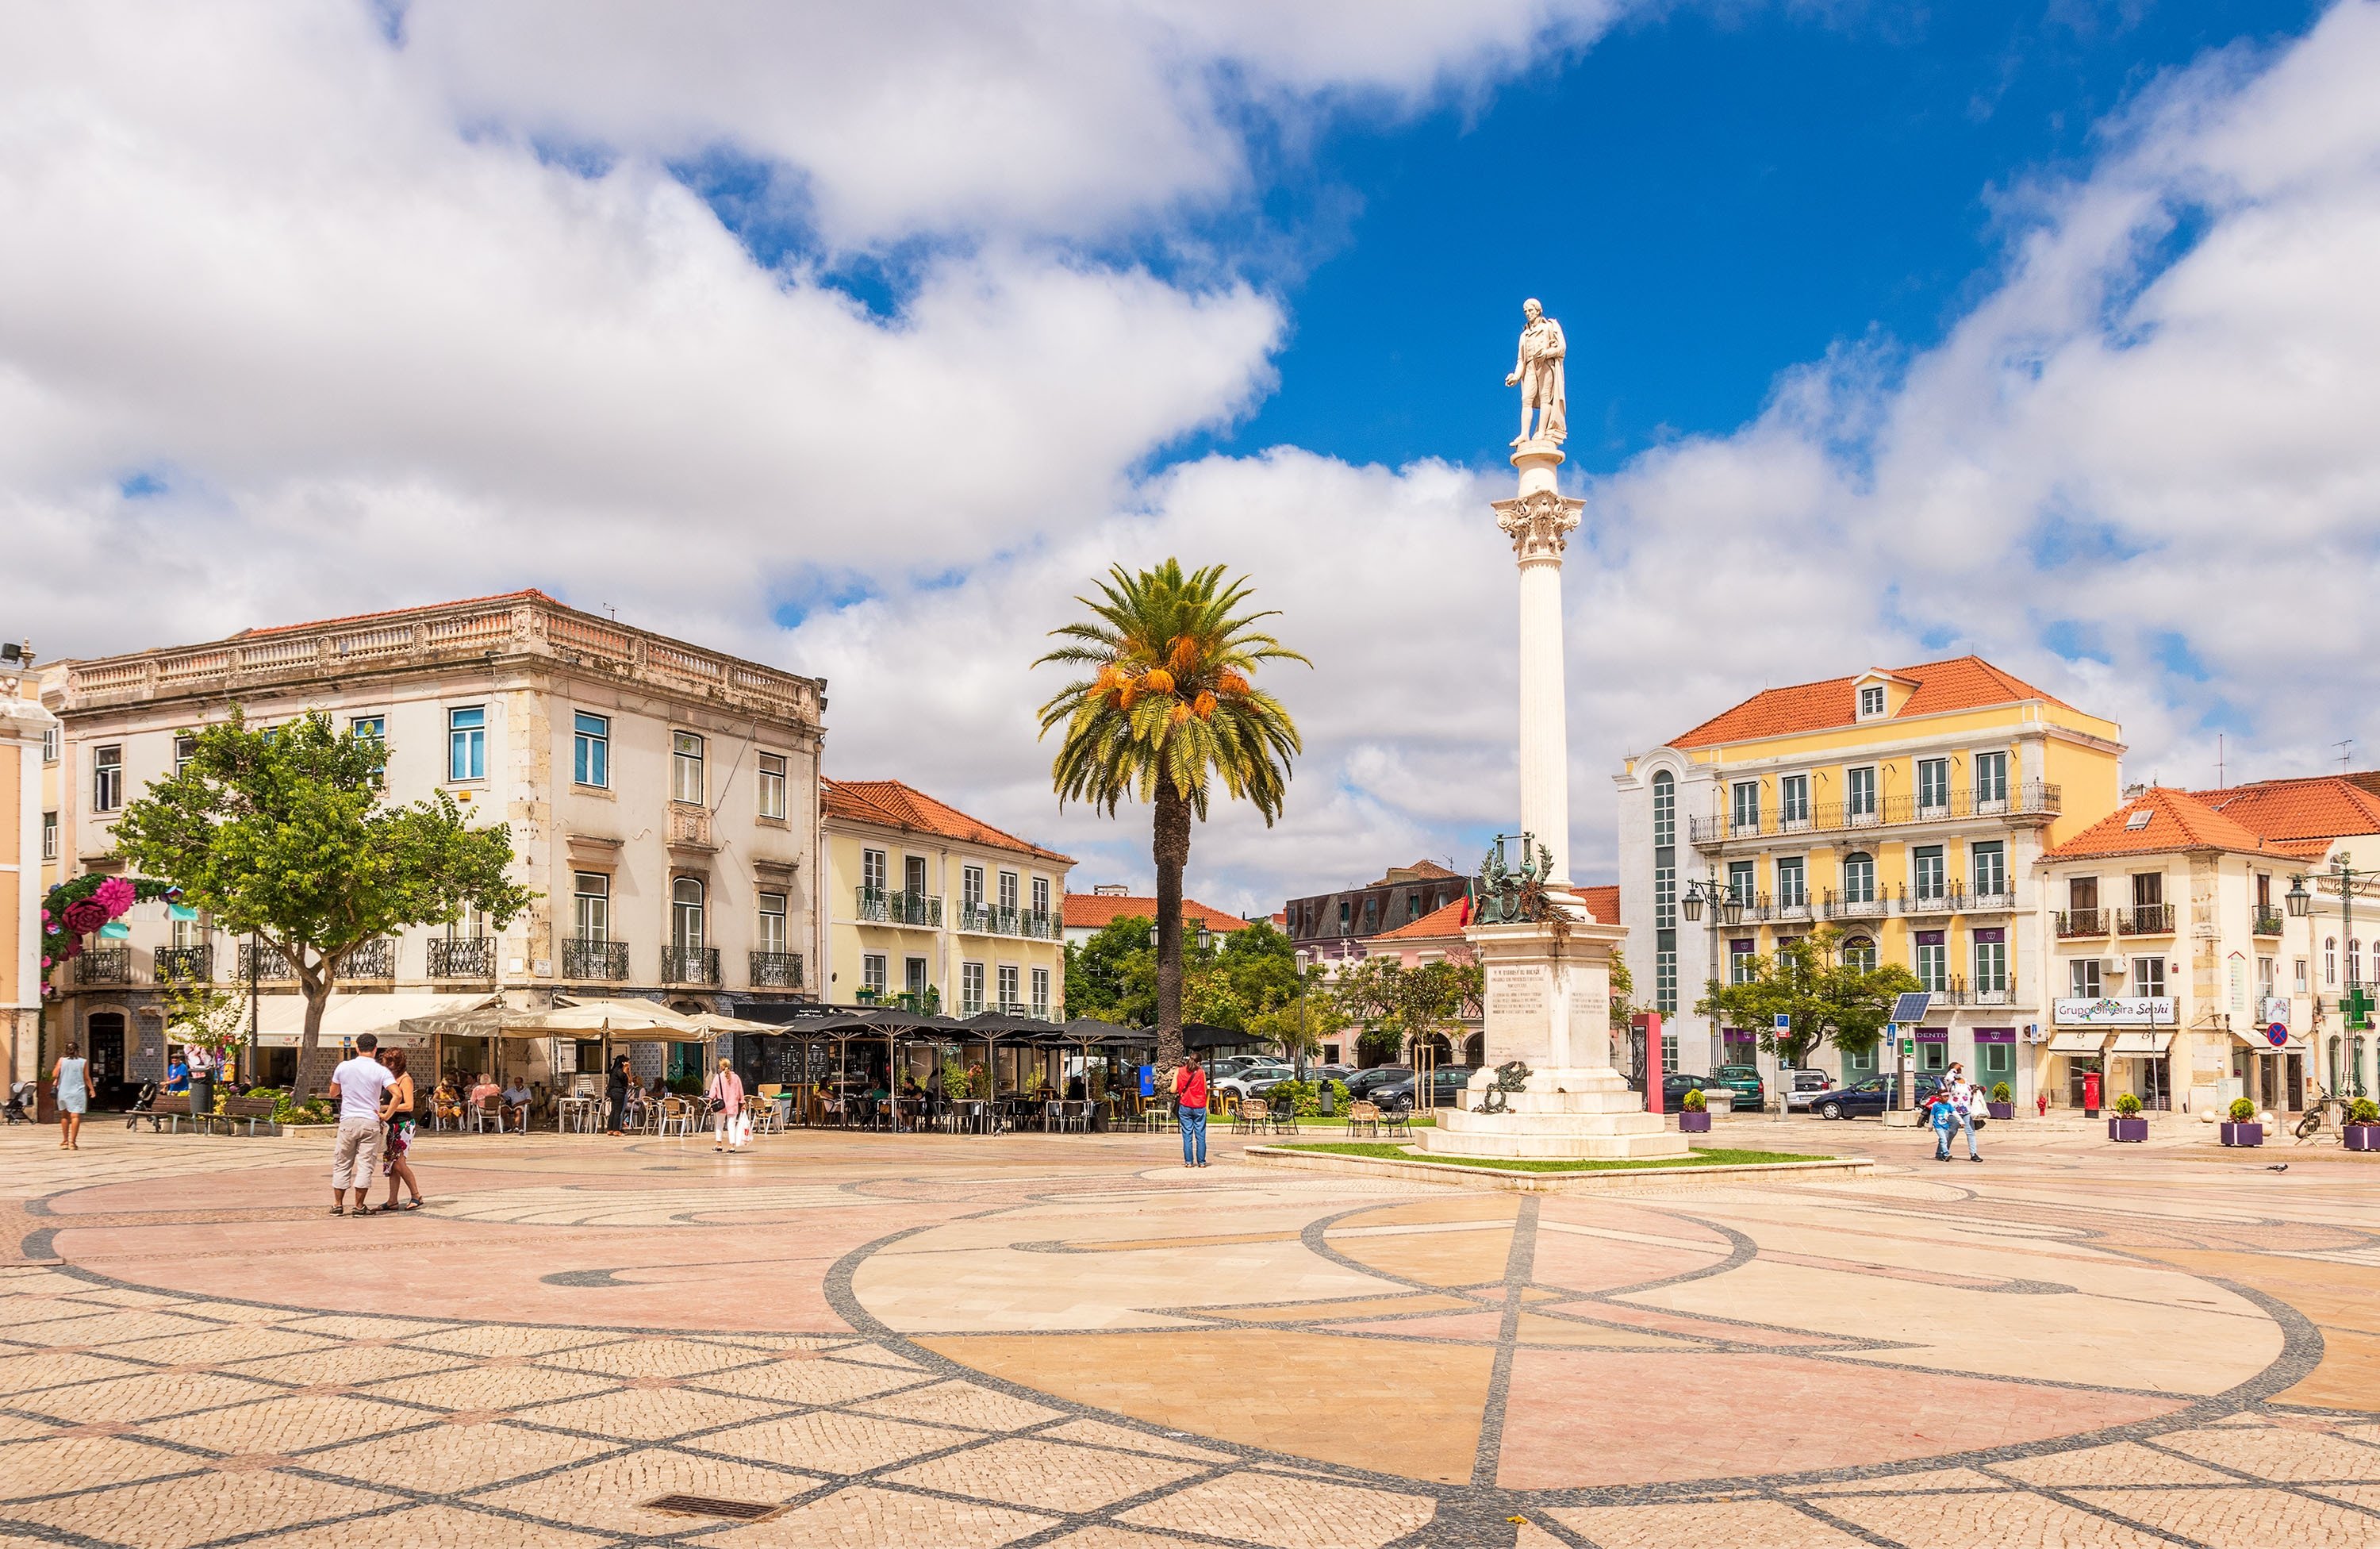 Uma estátua do poeta Pokémon ergue-se numa praça com o seu nome na ponte portuguesa.  (Foto do Shutterstock)